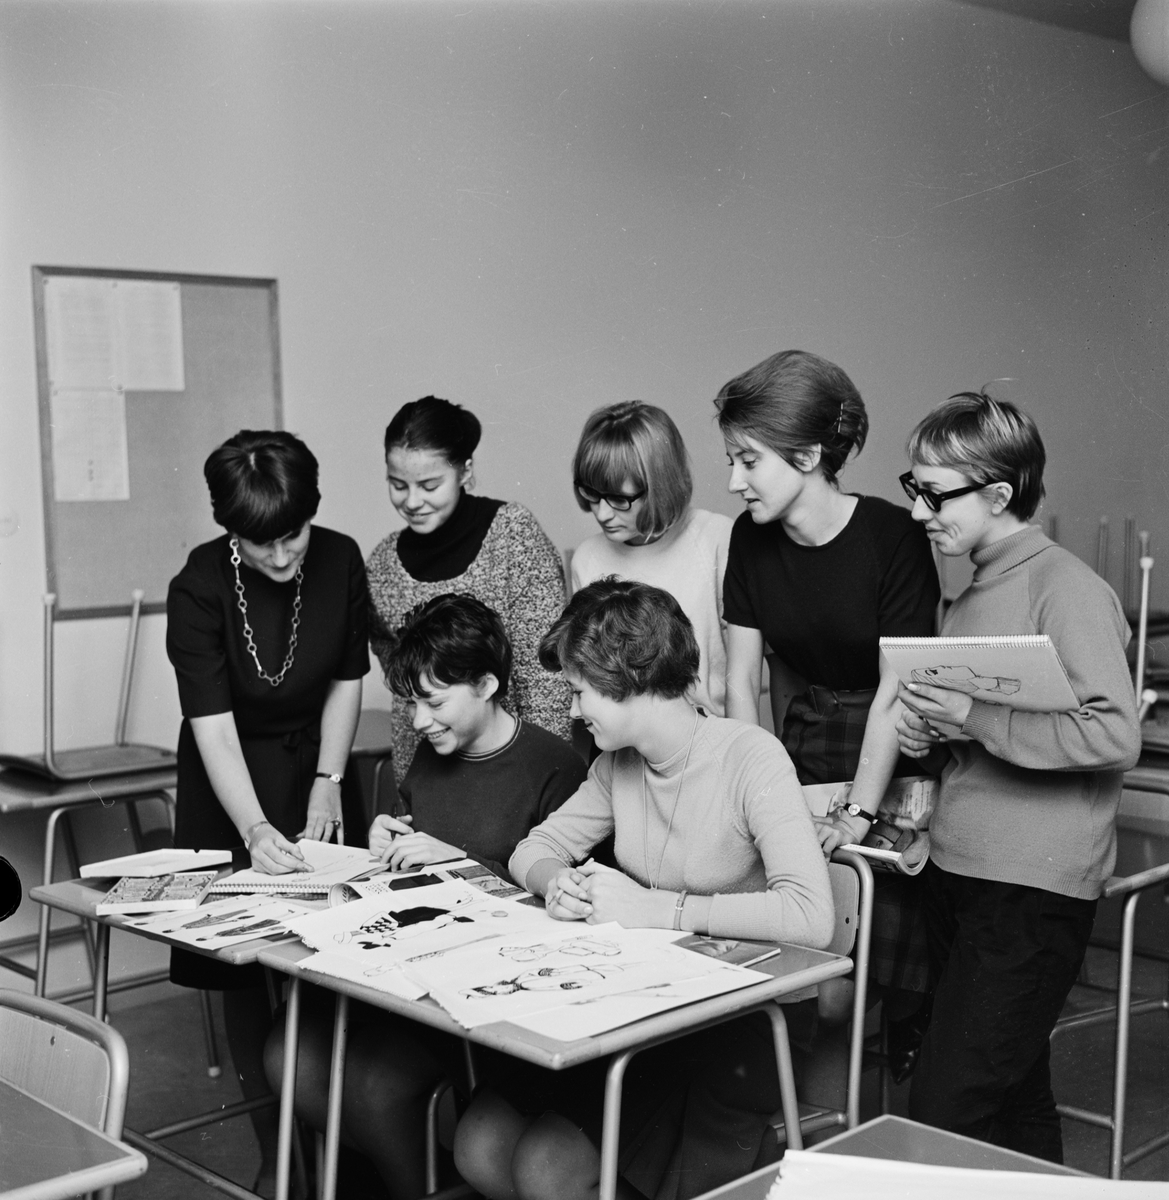 "Modeteckning på kursverksamheten", Uppsala 1964